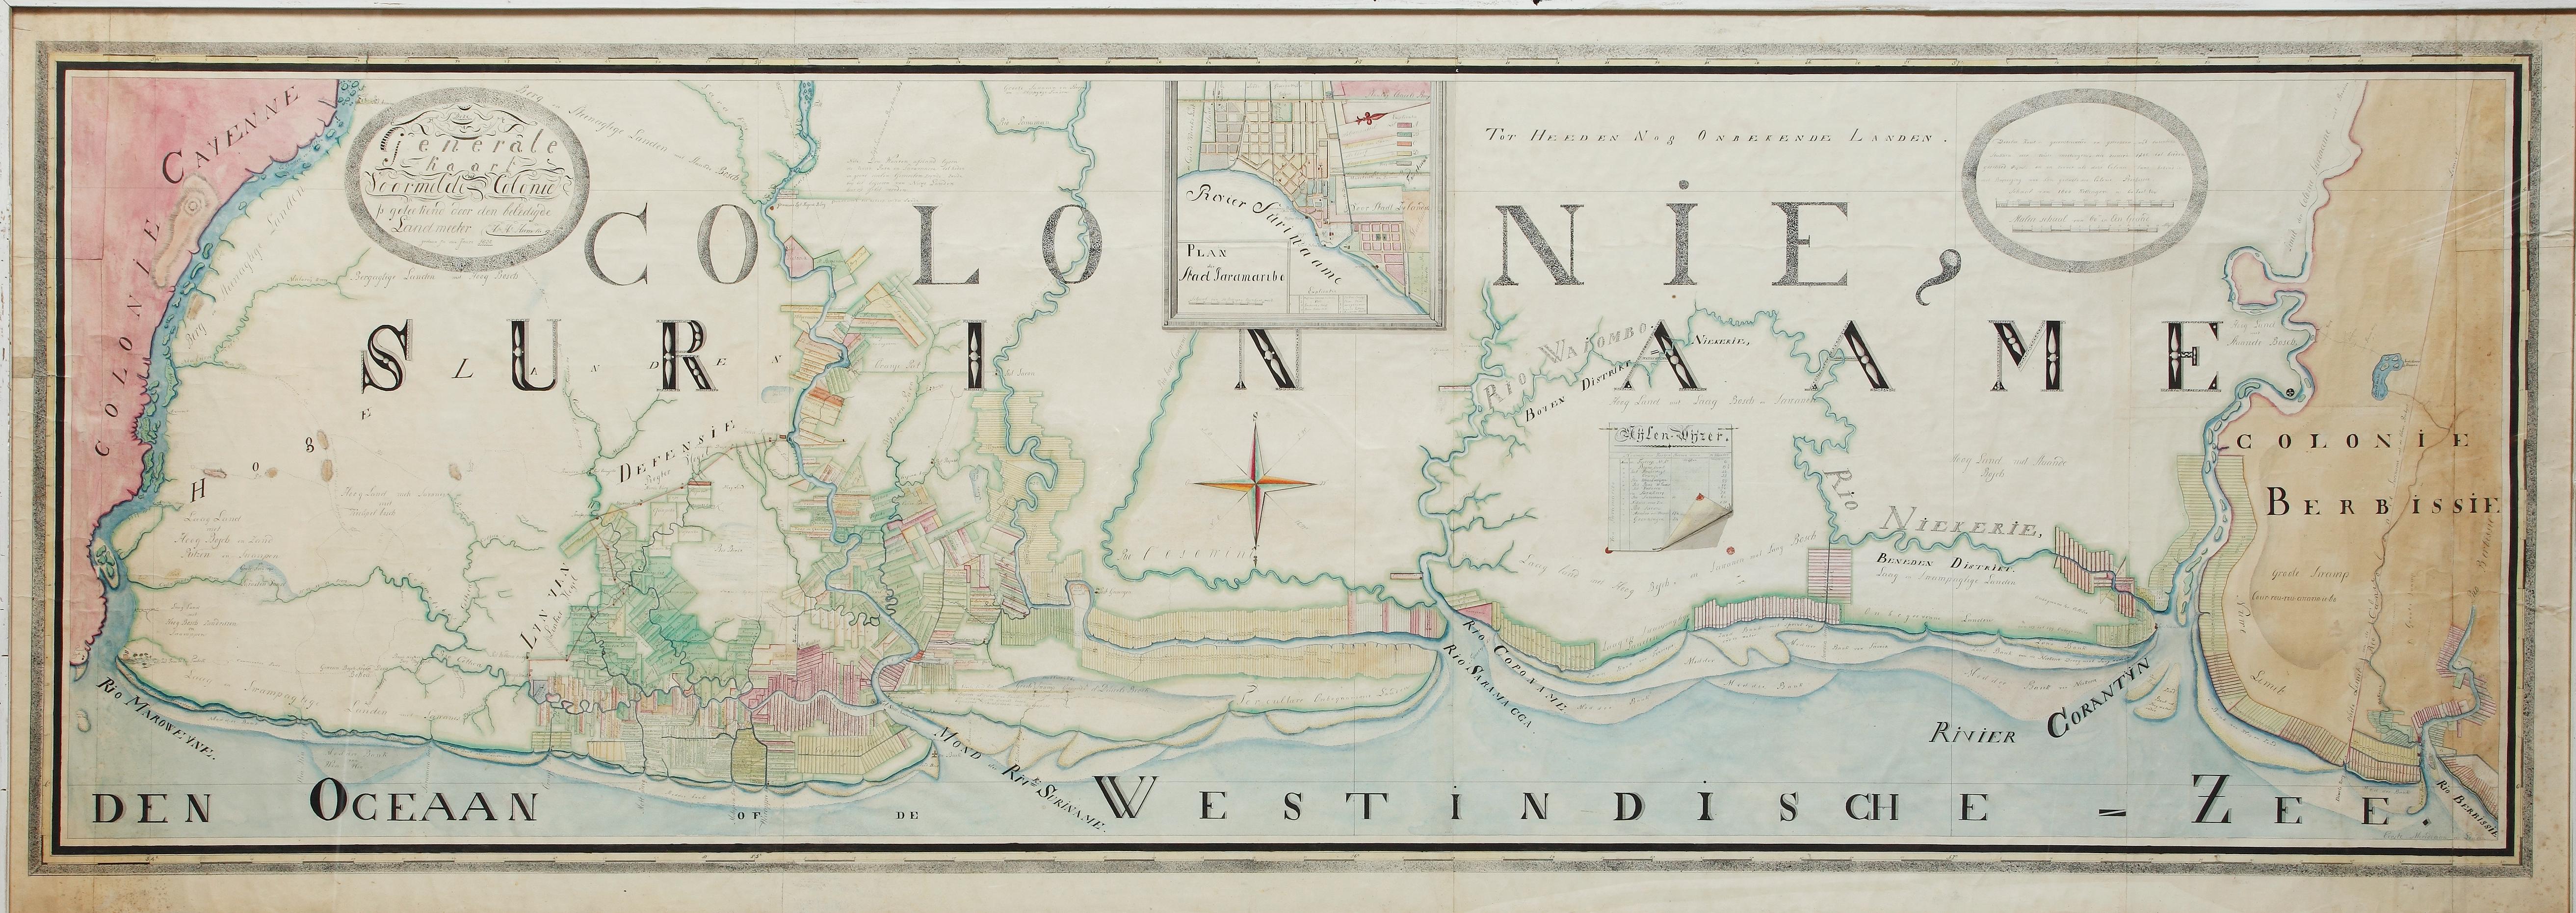 Eine einzigartige große handgezeichnete Karte von Surinam von Albrecht Helmut Hiemcke (Deutscher, 1760-1839)

?

kolonie Surinam